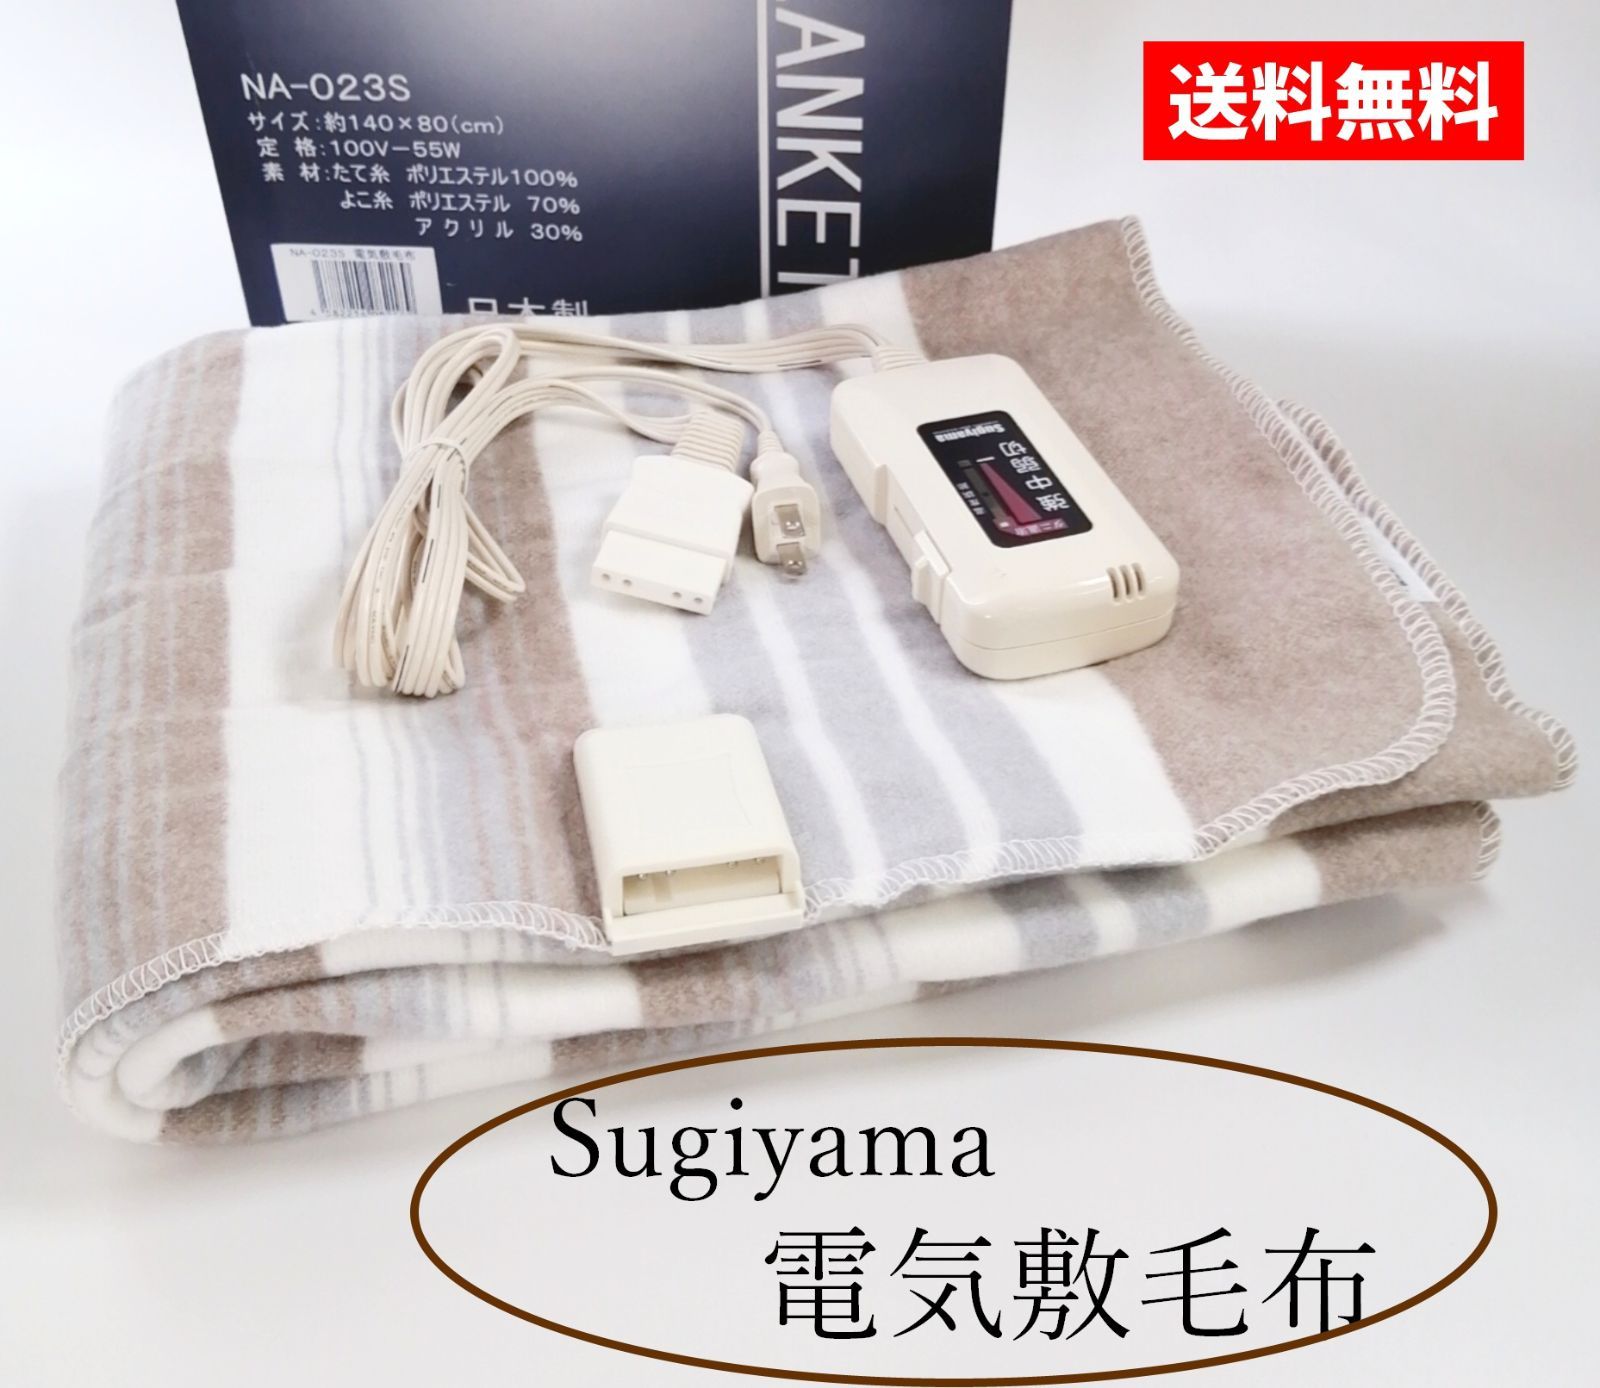 代引き手数料無料 Sugiyama 敷き毛布 140×80cm NA-023S